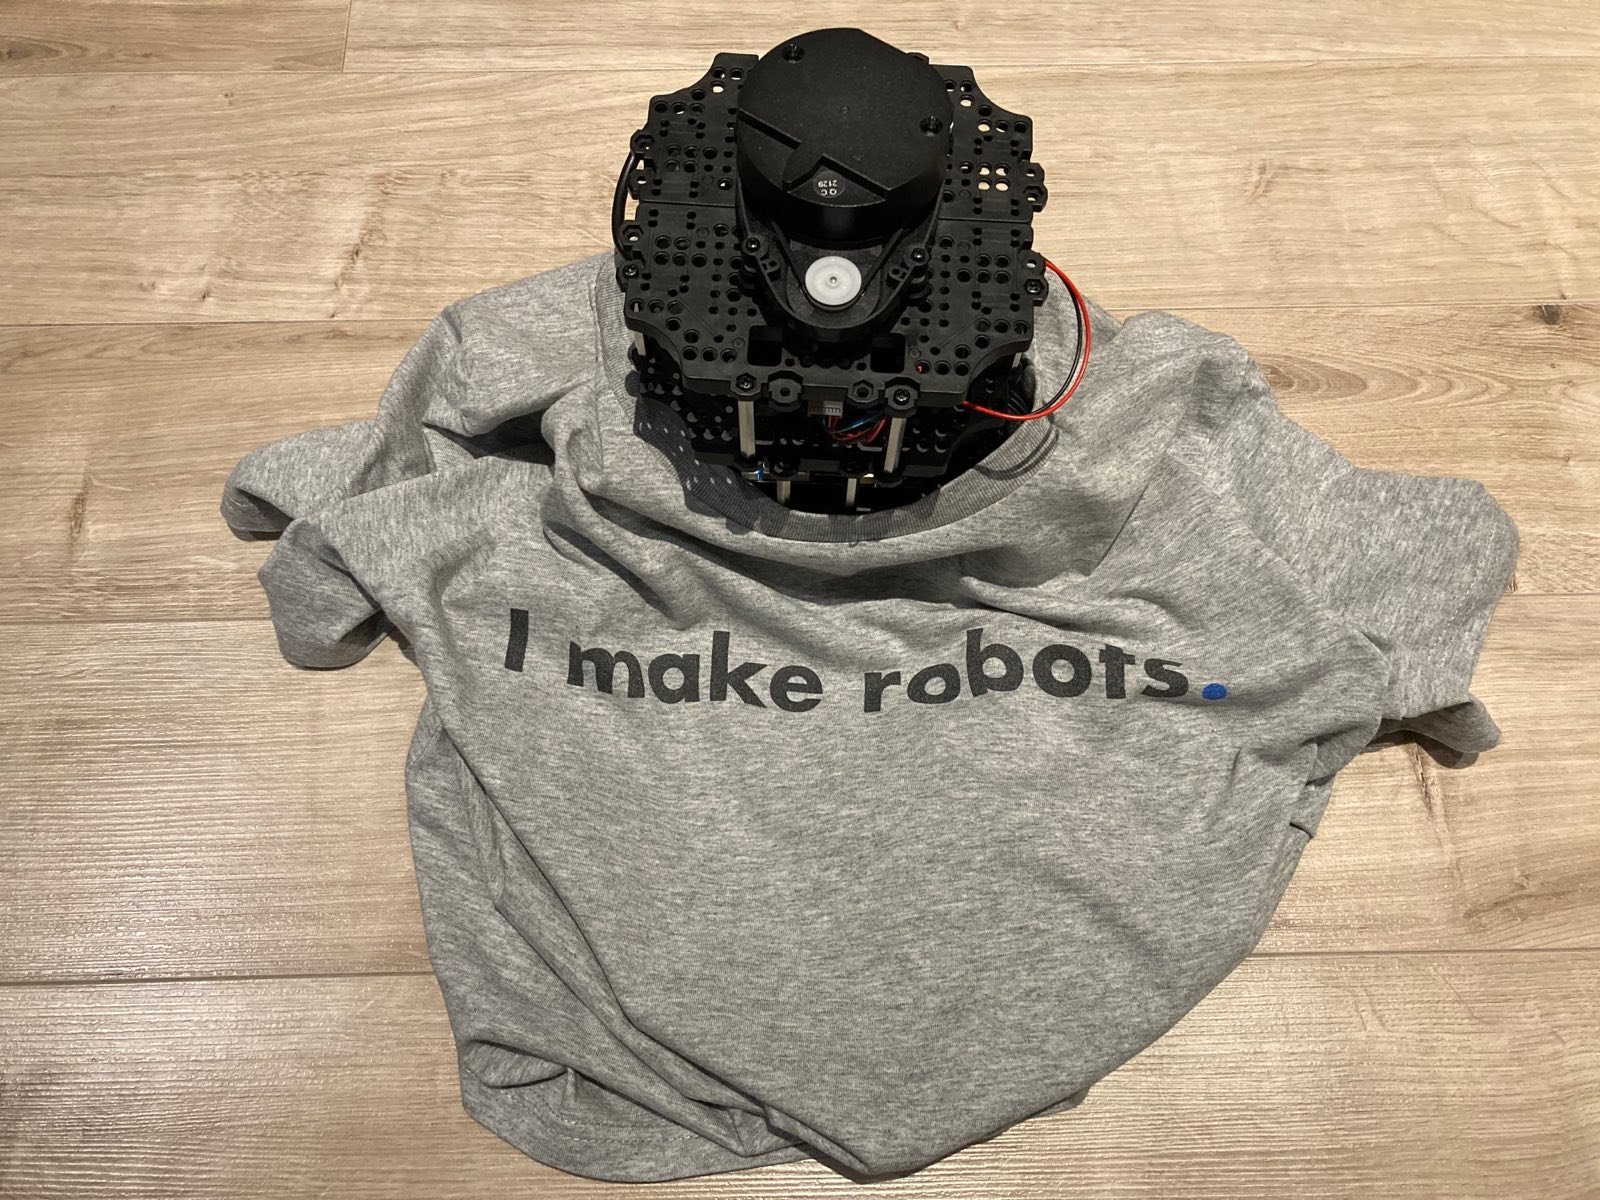 Turtlebot wearing T-shirt 'I make robots'